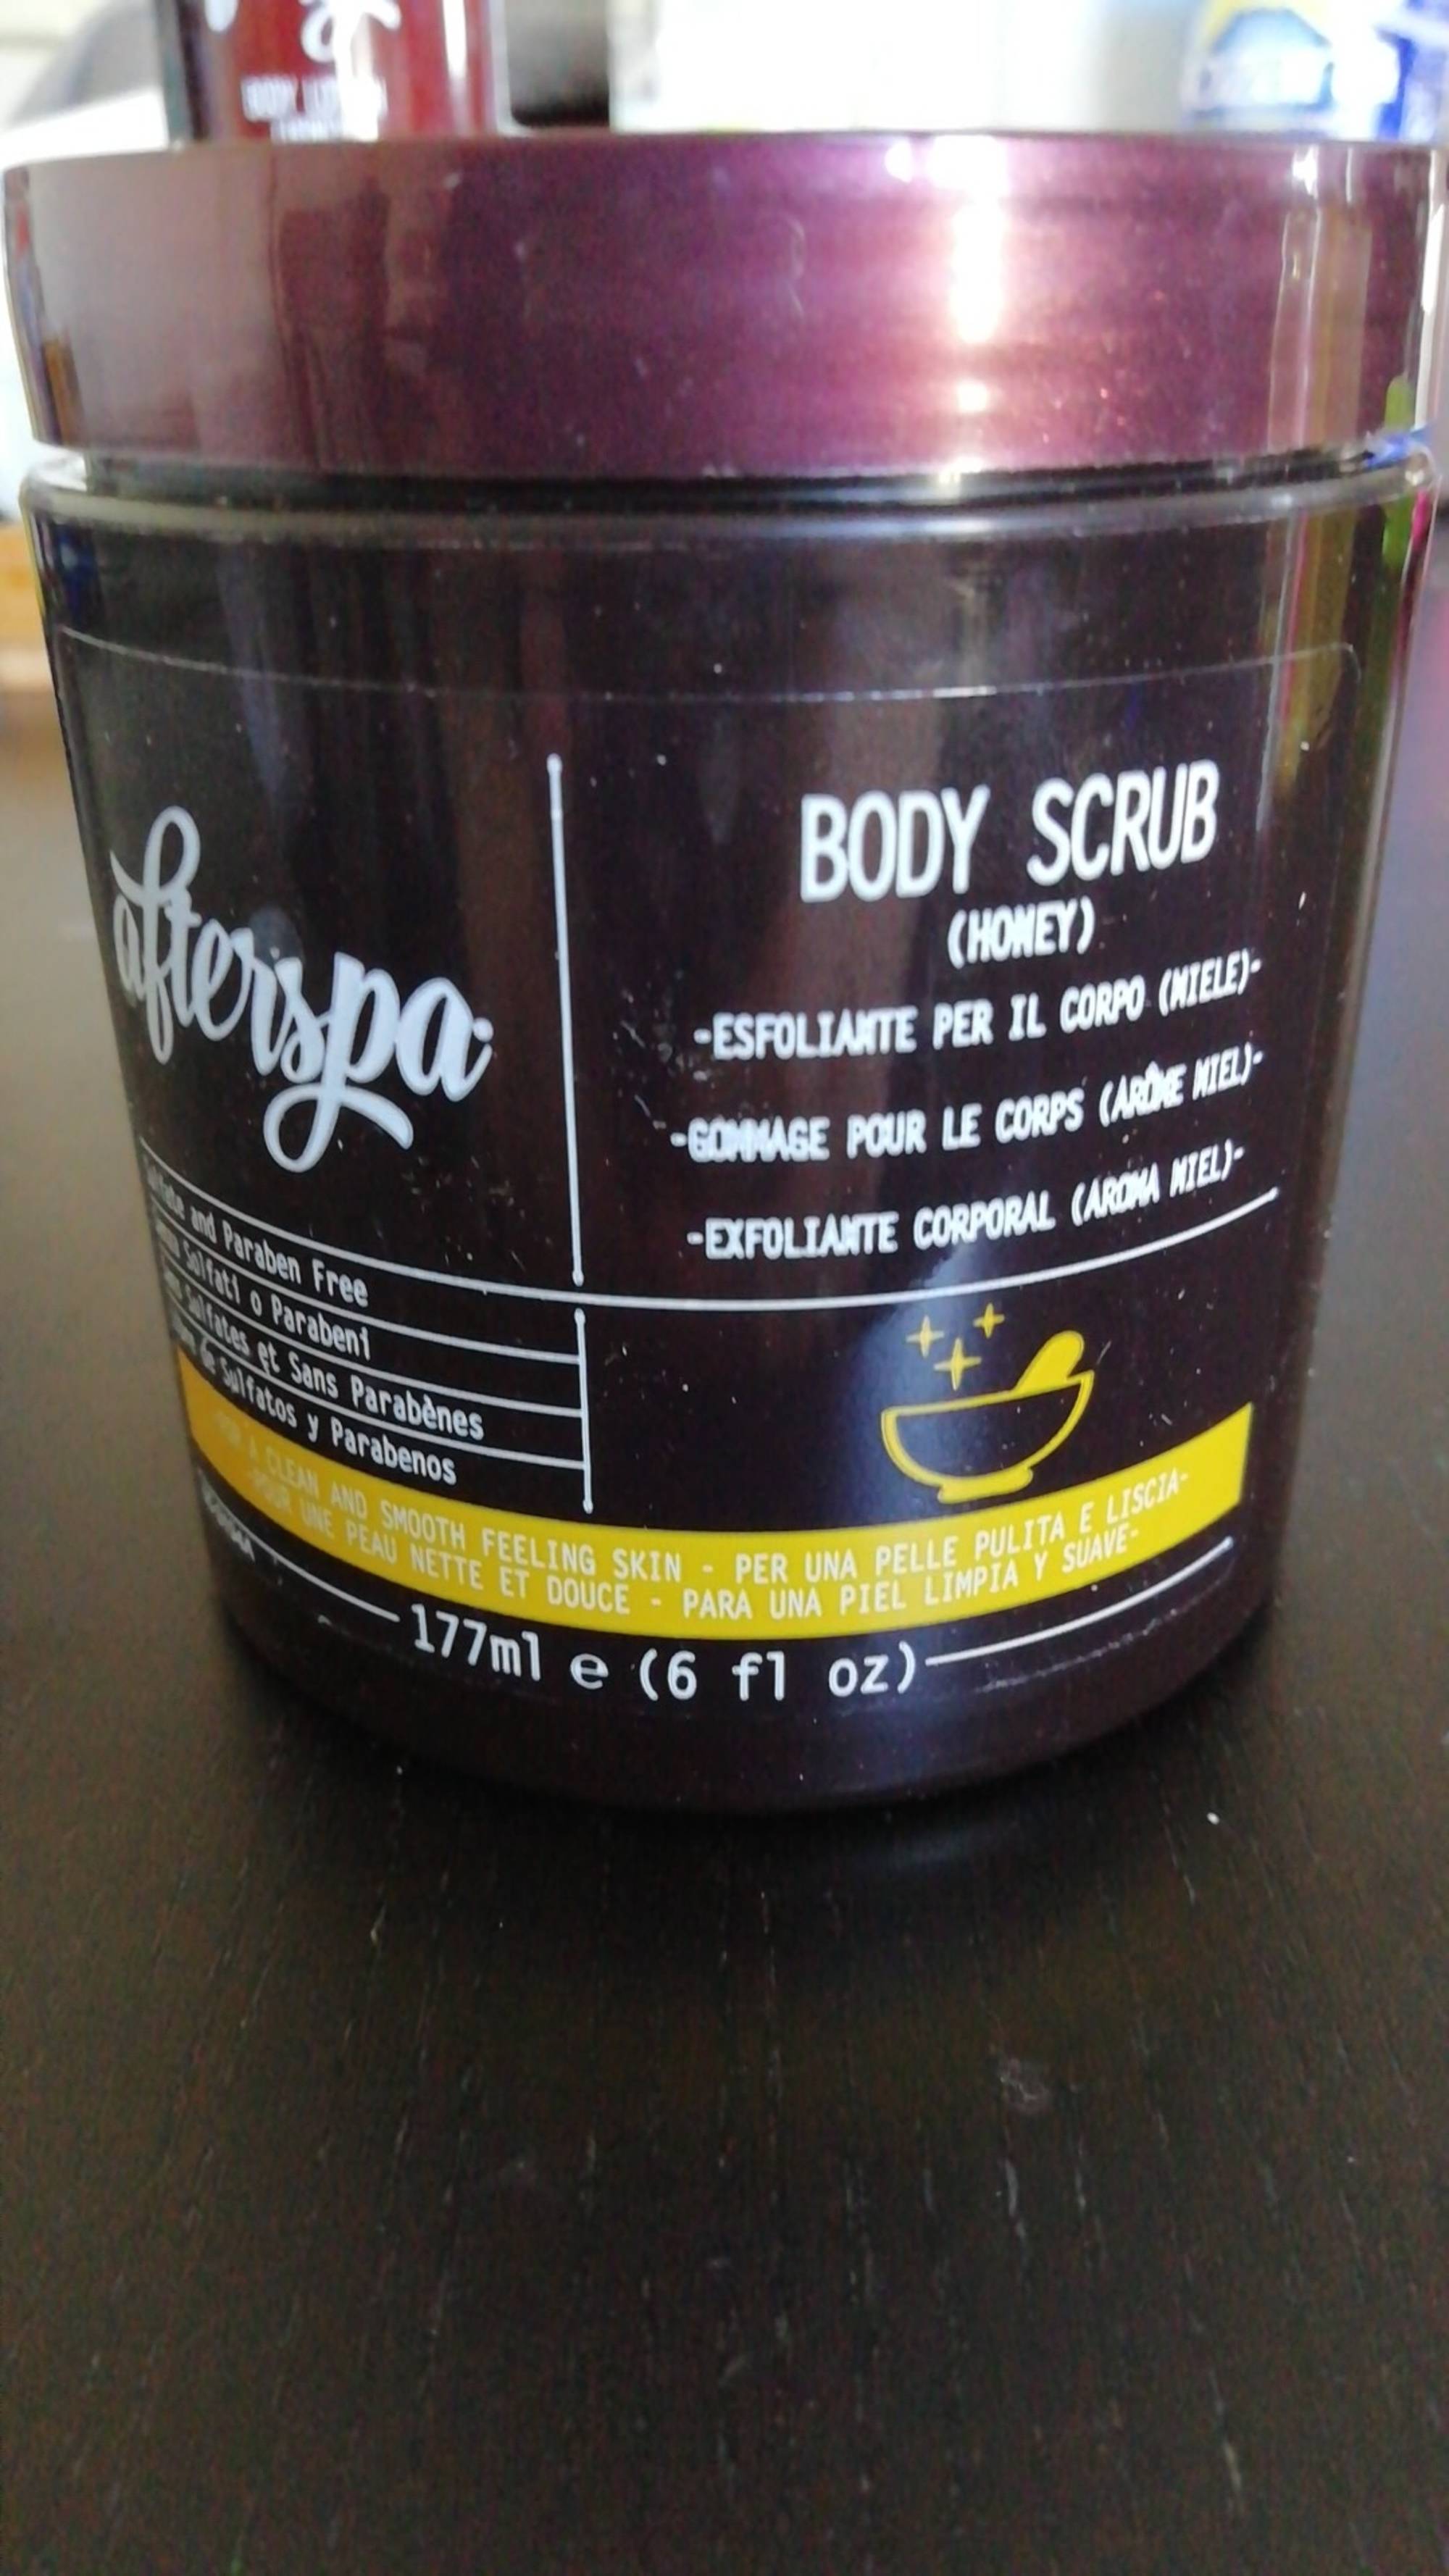 AFTERSPA - Body scrub honey